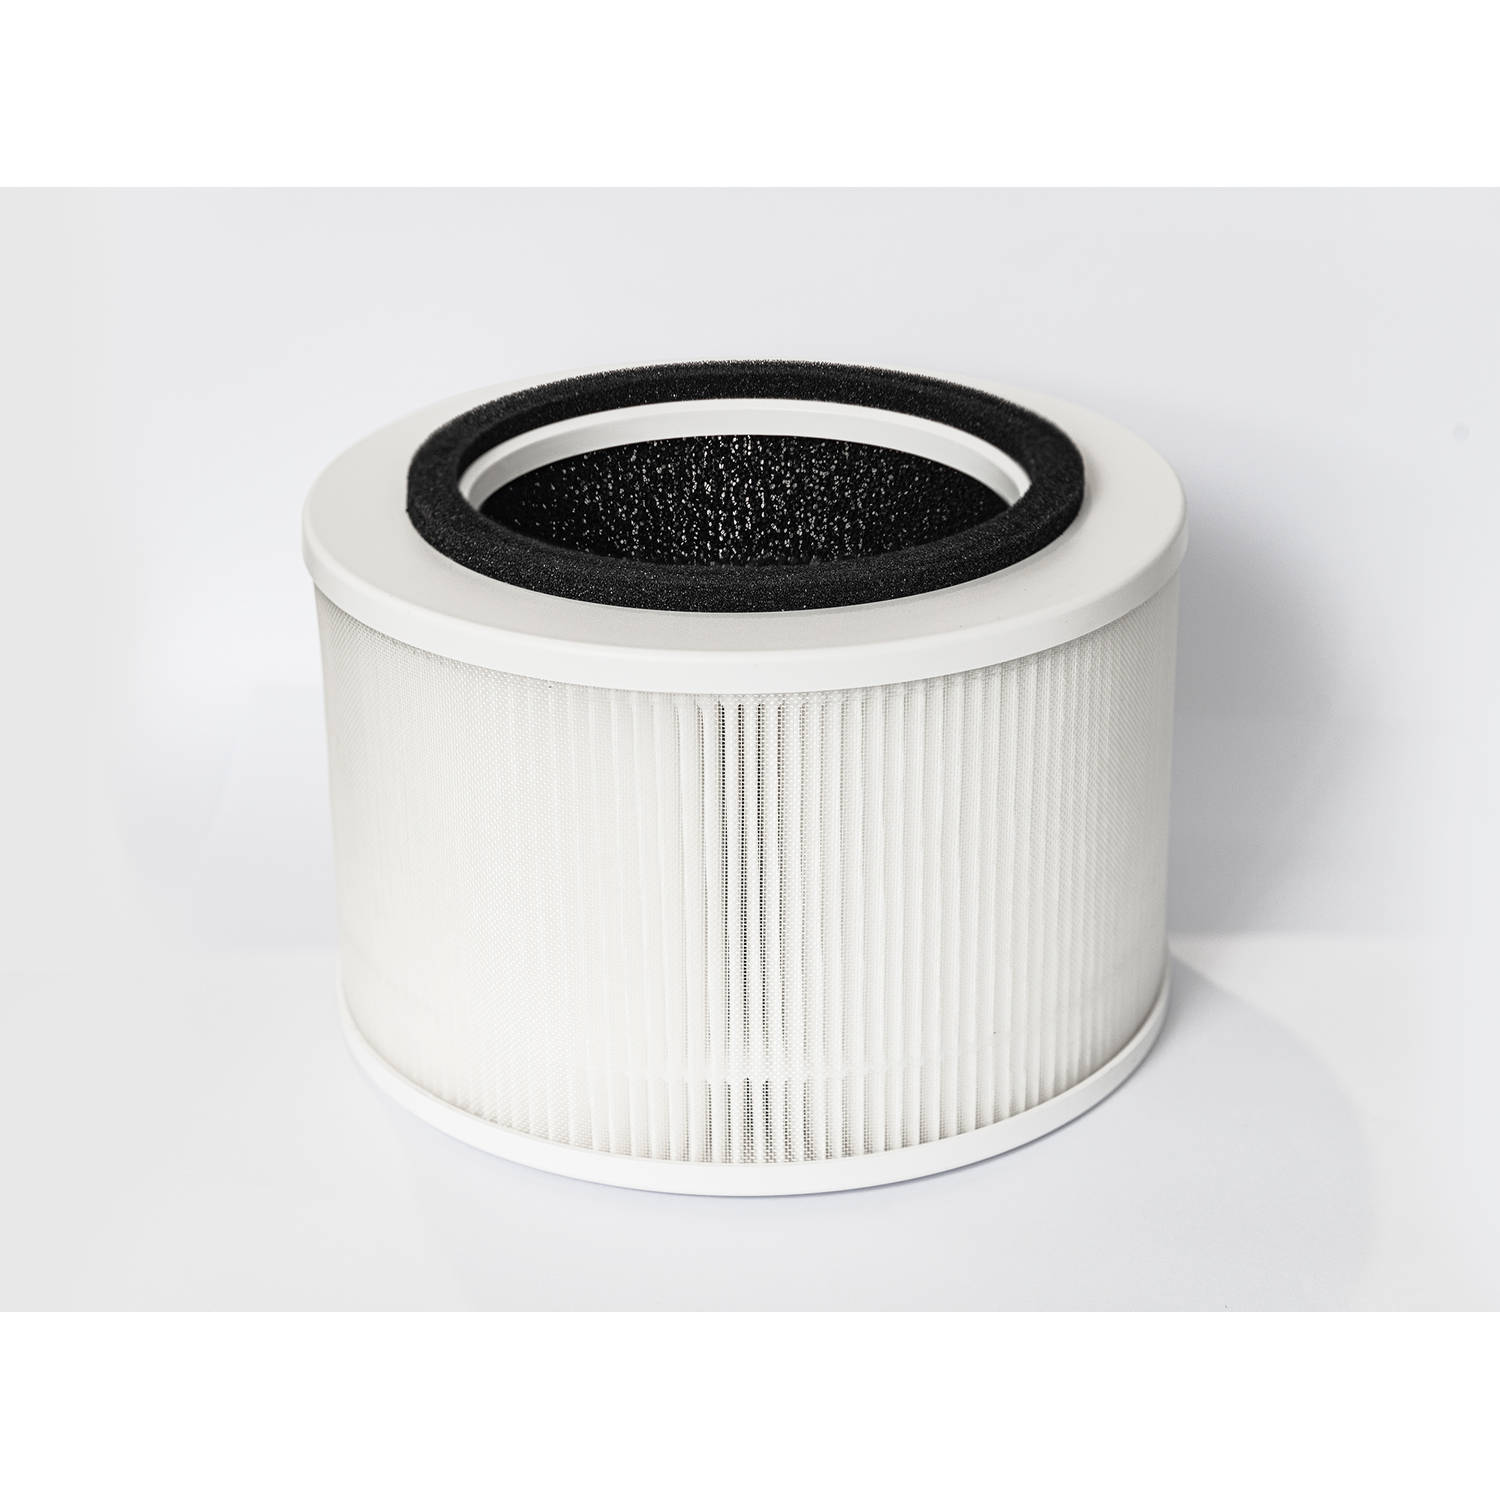 Vibrix PureFlow30 luchtreiniger filter